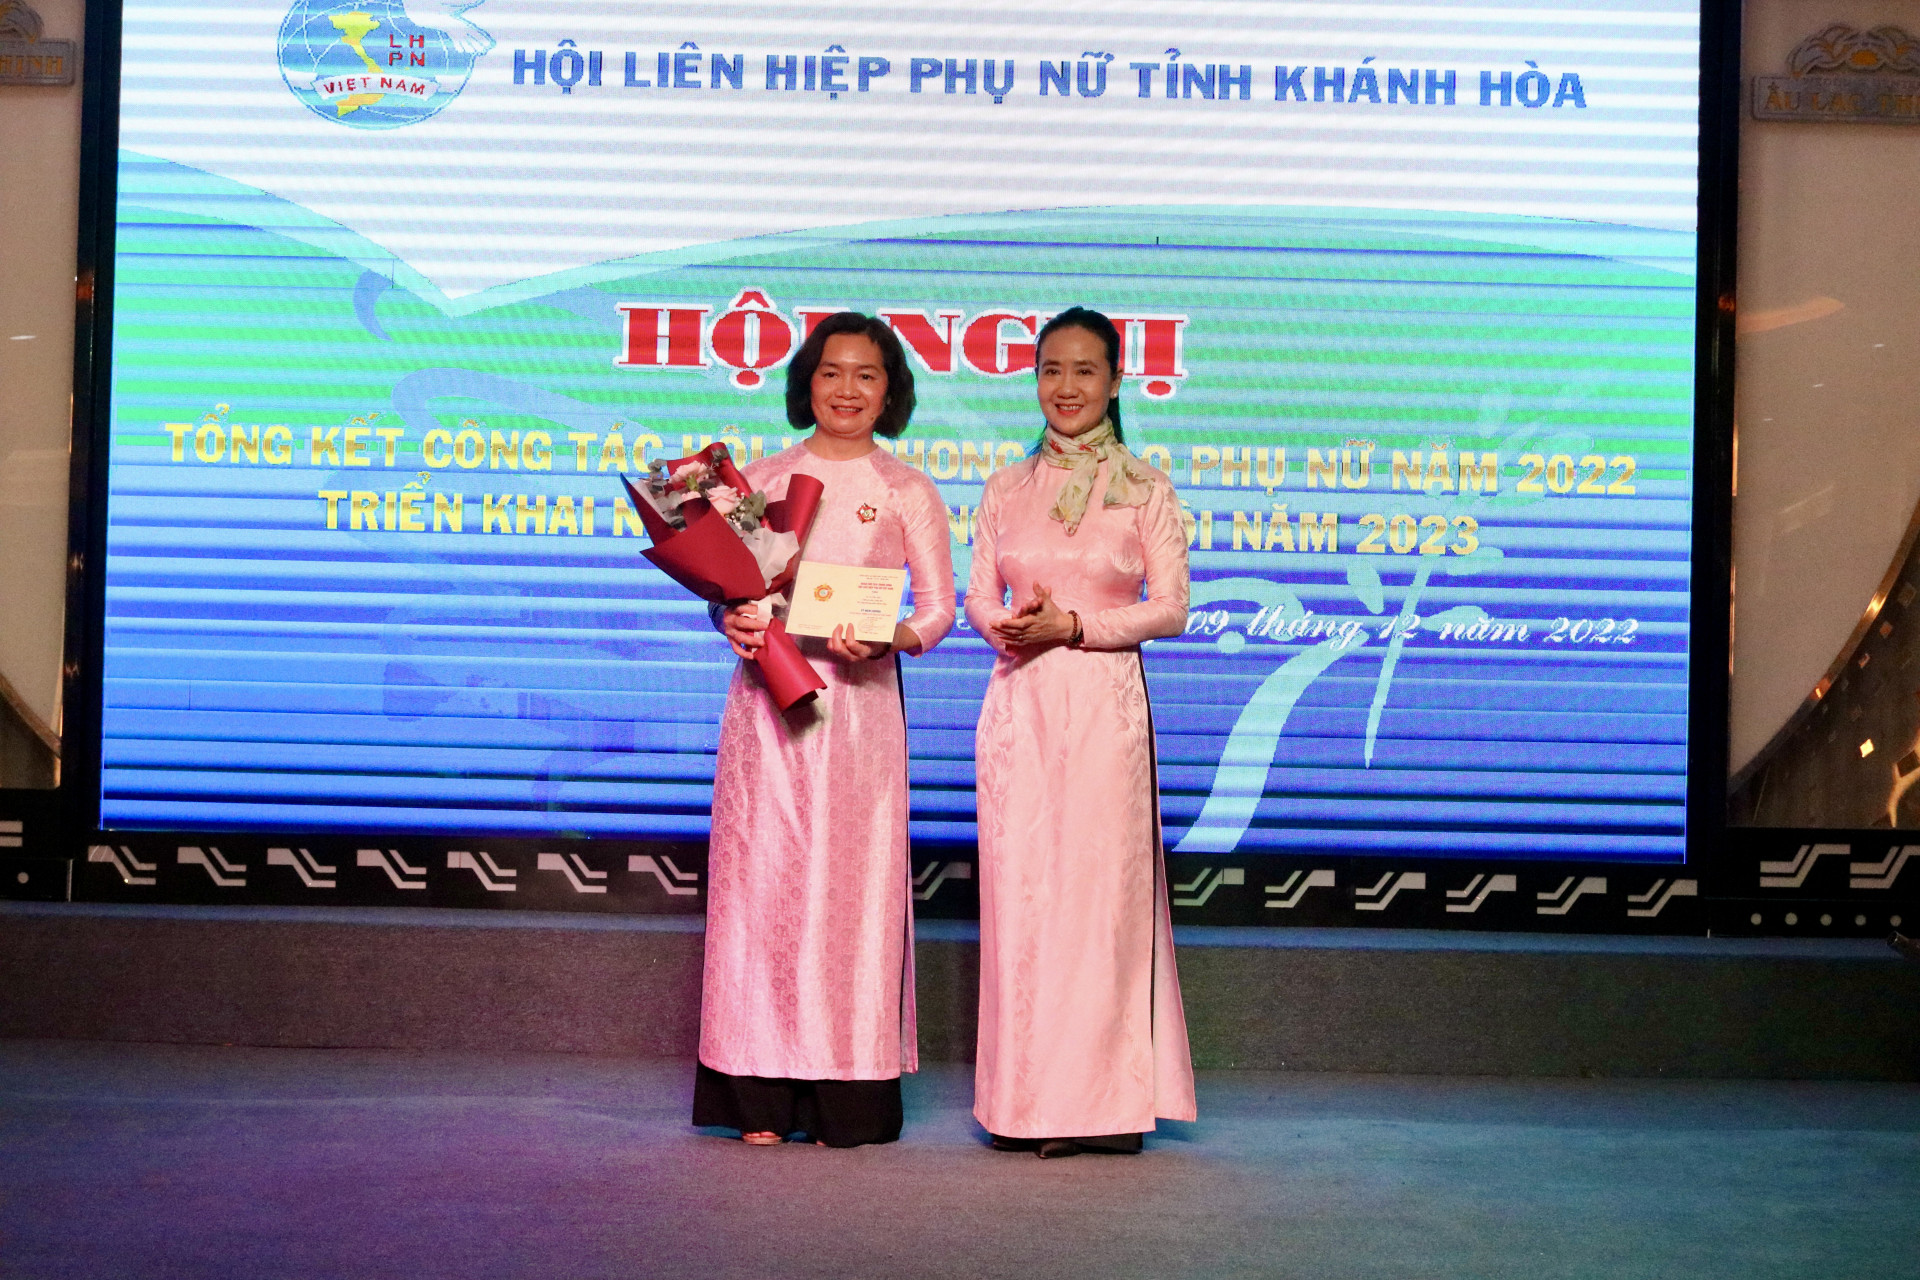 Trao kỷ niệm chương Vì sự phát triển của Phụ nữ Việt Nam.